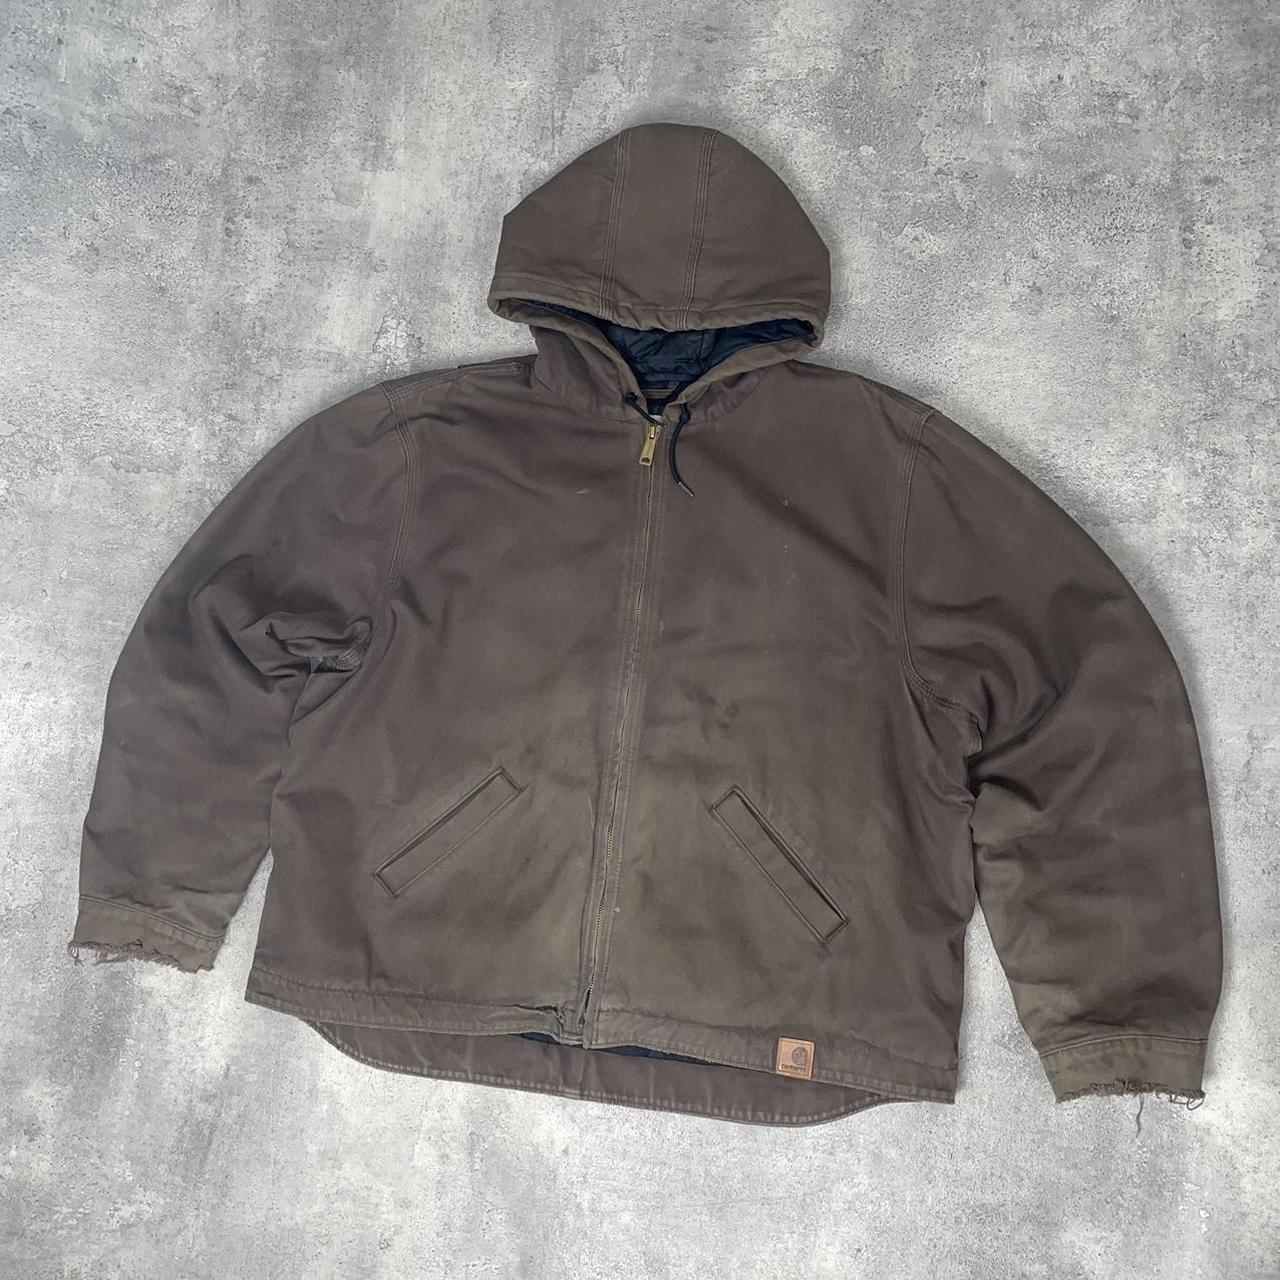 Vintage Carhartt workwear jacket in brown 8/10 some... - Depop